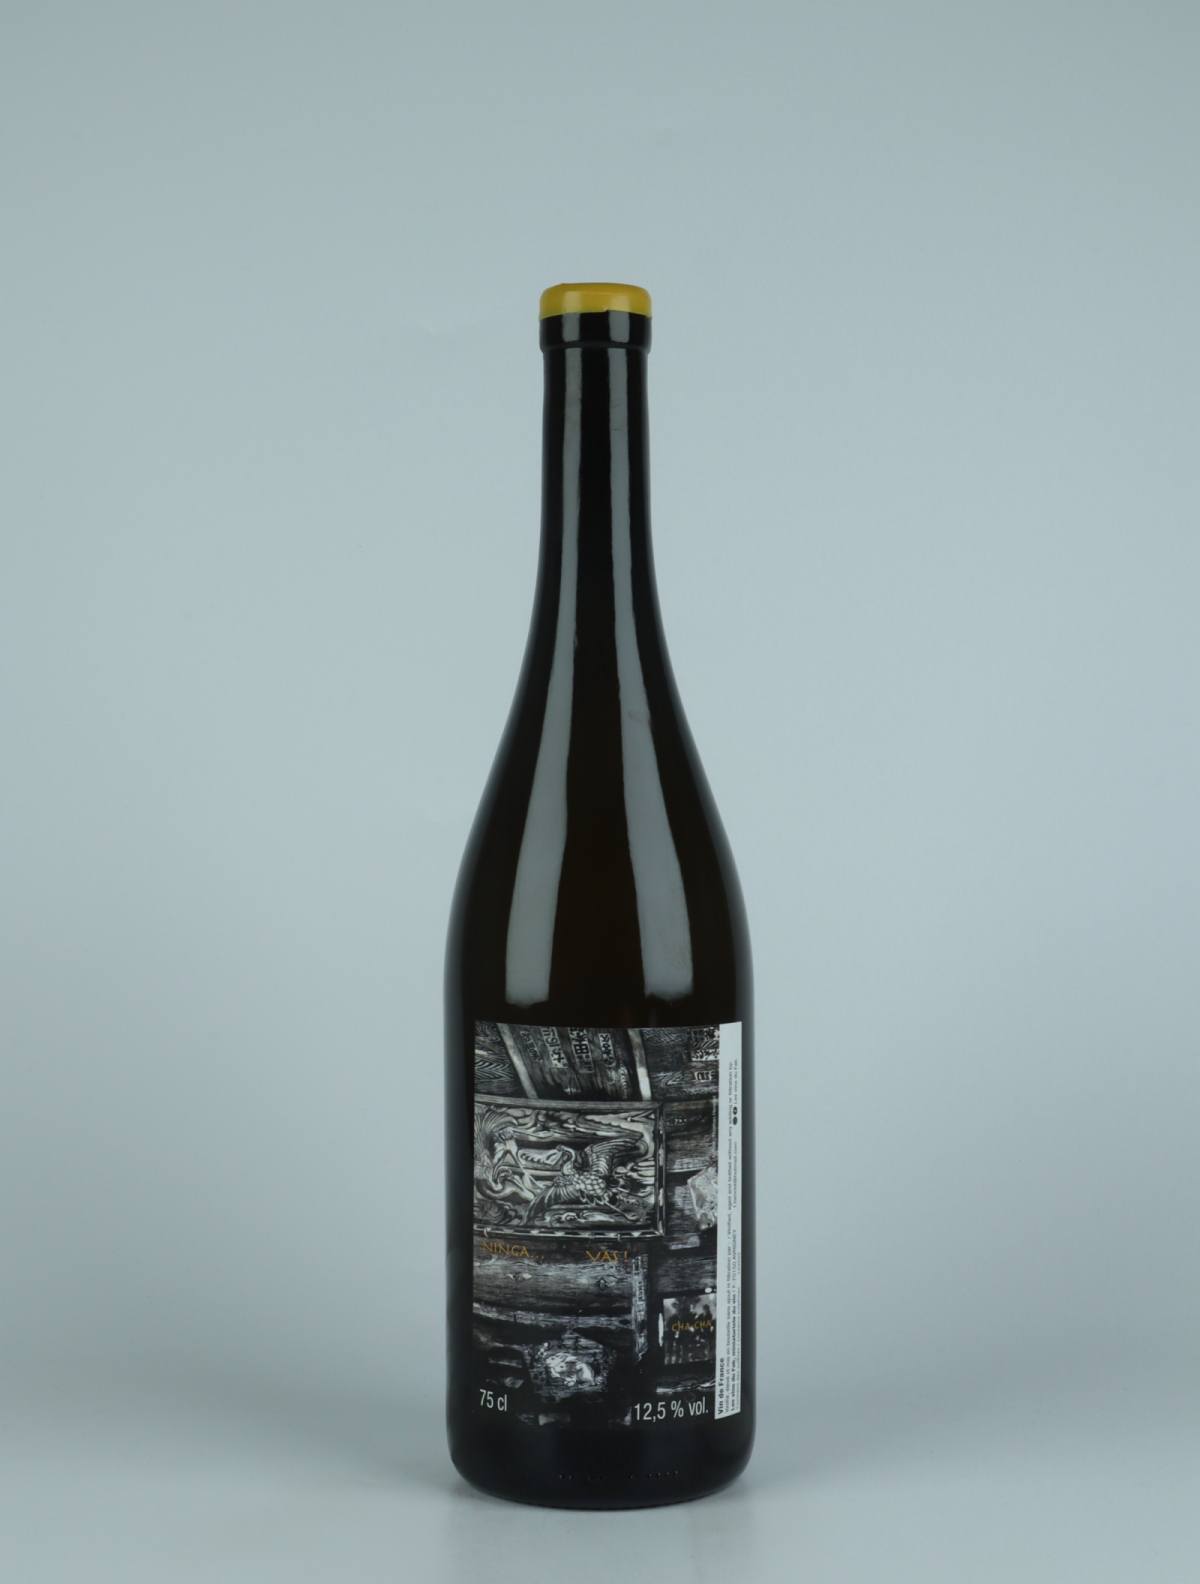 A bottle 2020 Ninga...Vas! White wine from Les Vins du Fab, Jura in 